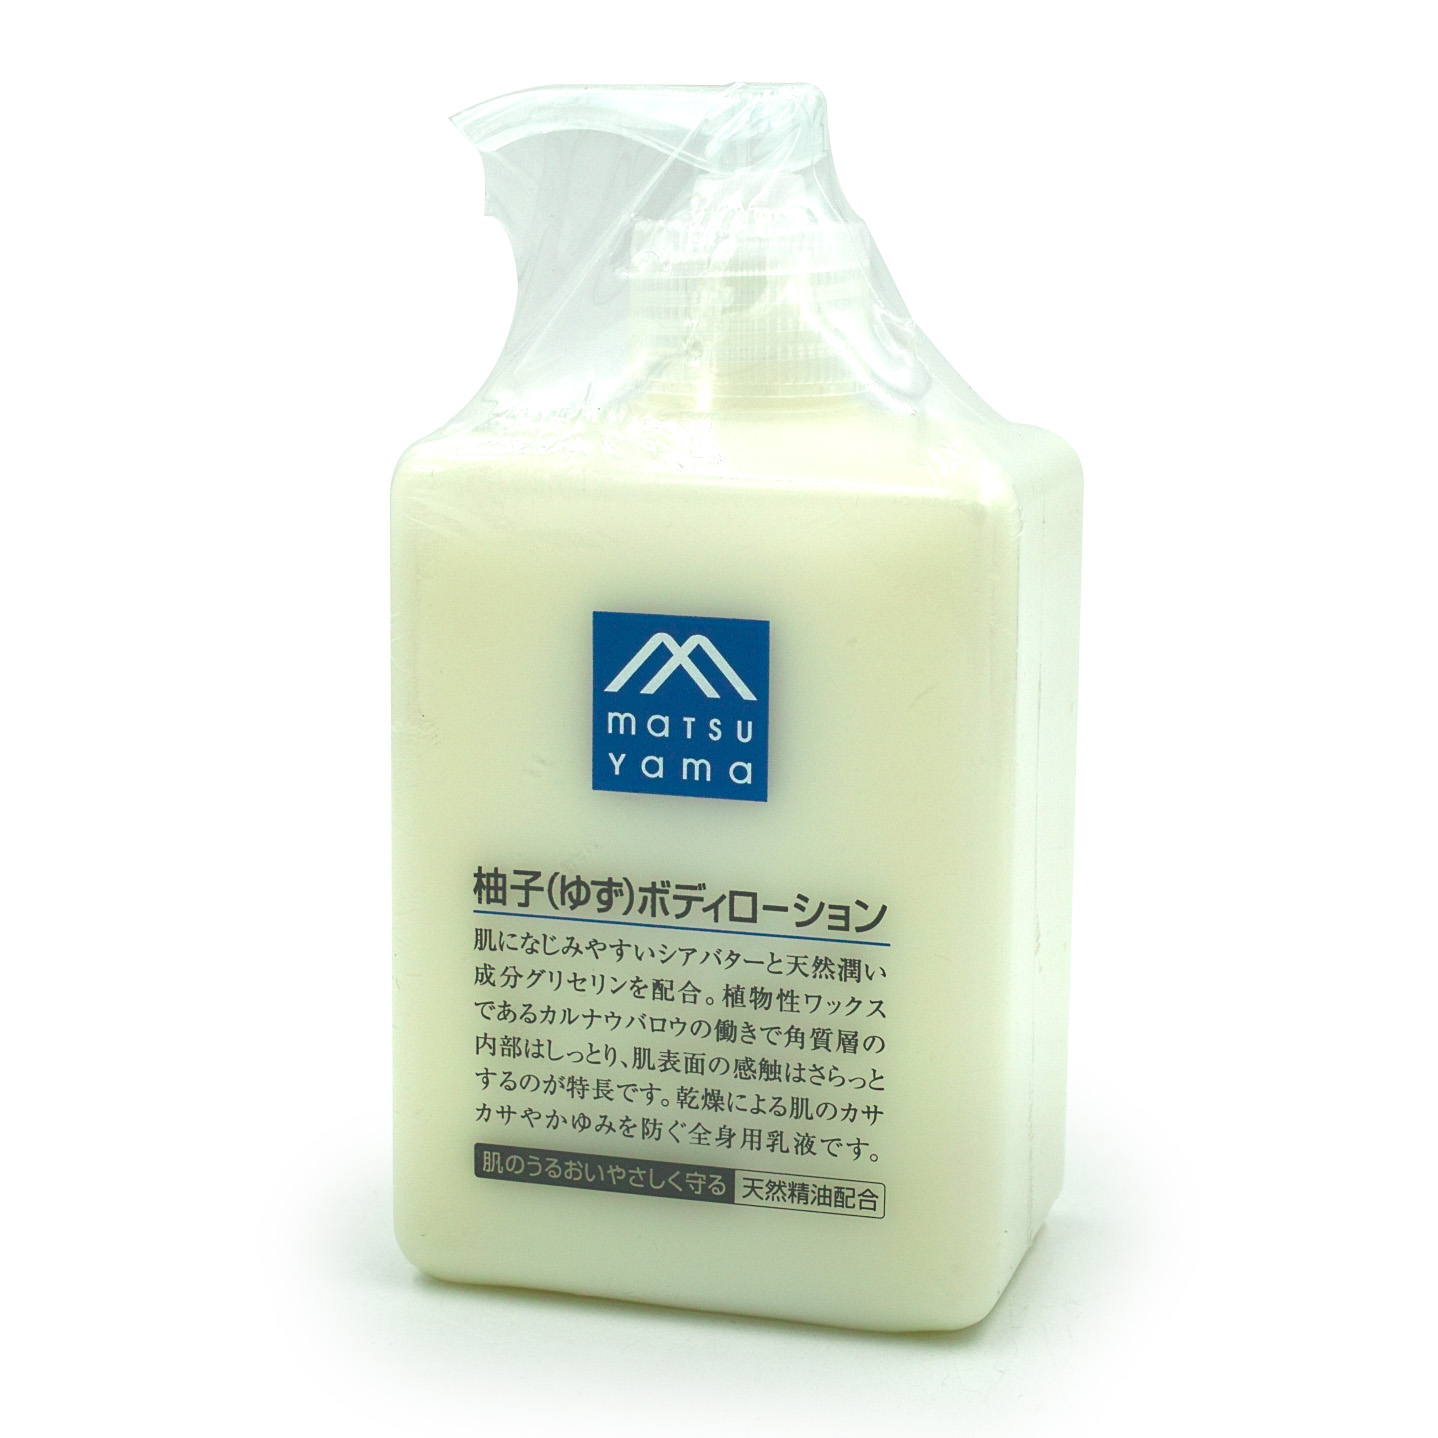 在途 日本matsuyama松山油脂天然柚子身体乳300ml 清爽滋润不油腻